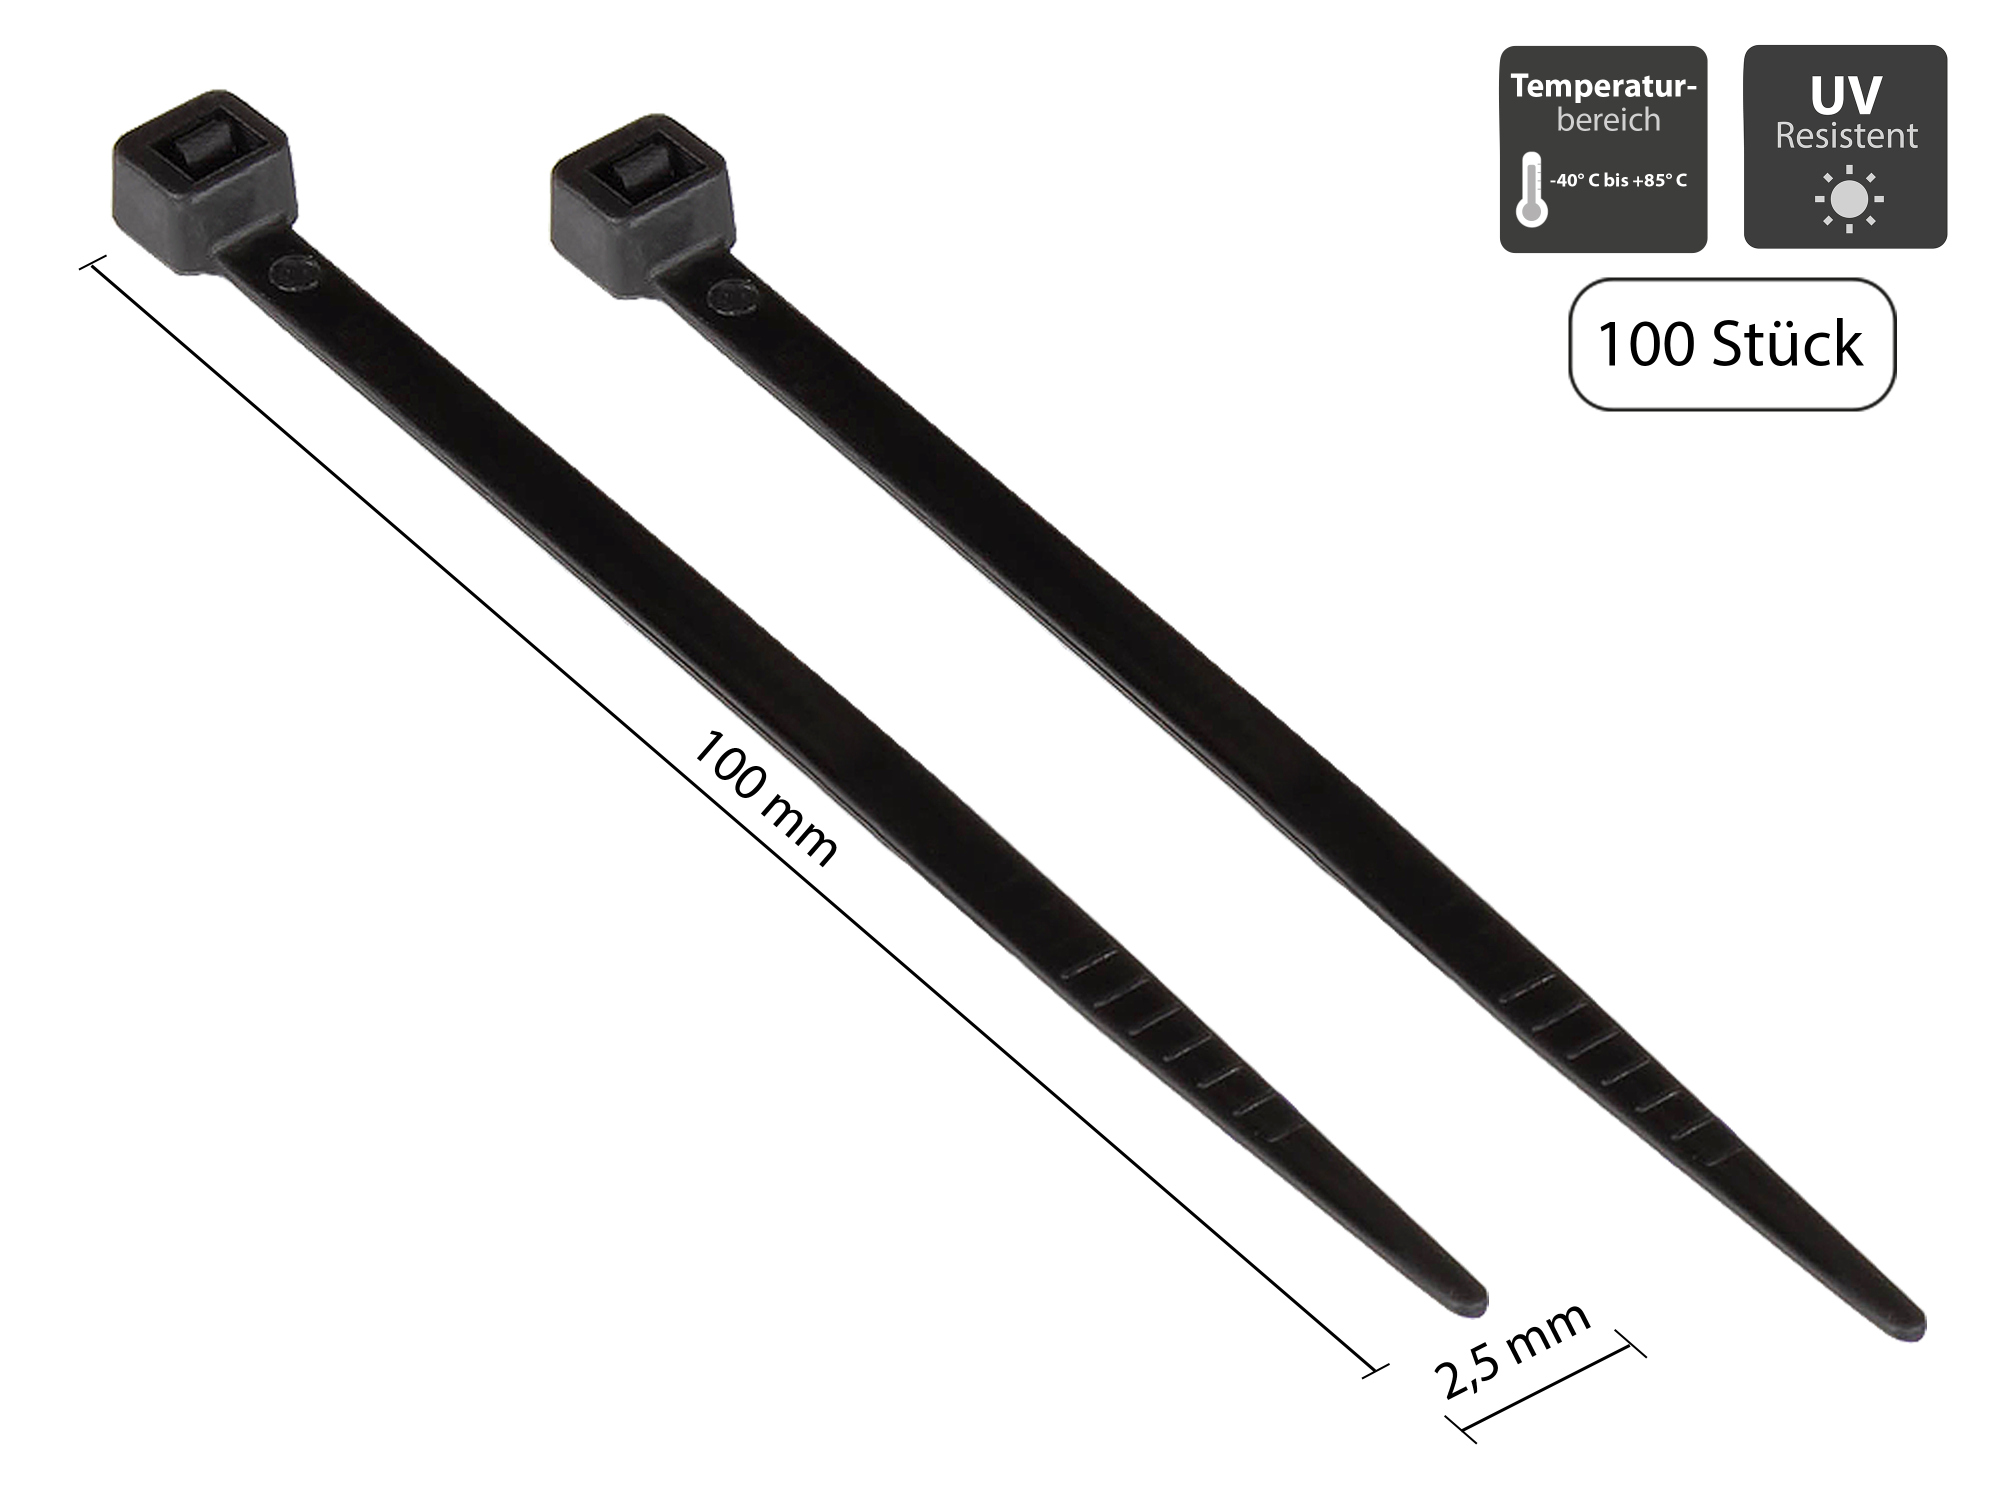 Kabelbinder 100 mm x 2,5 mm, schwarz, UL, UV-resistent, -40 °C bis +85 °C, 100 Stück